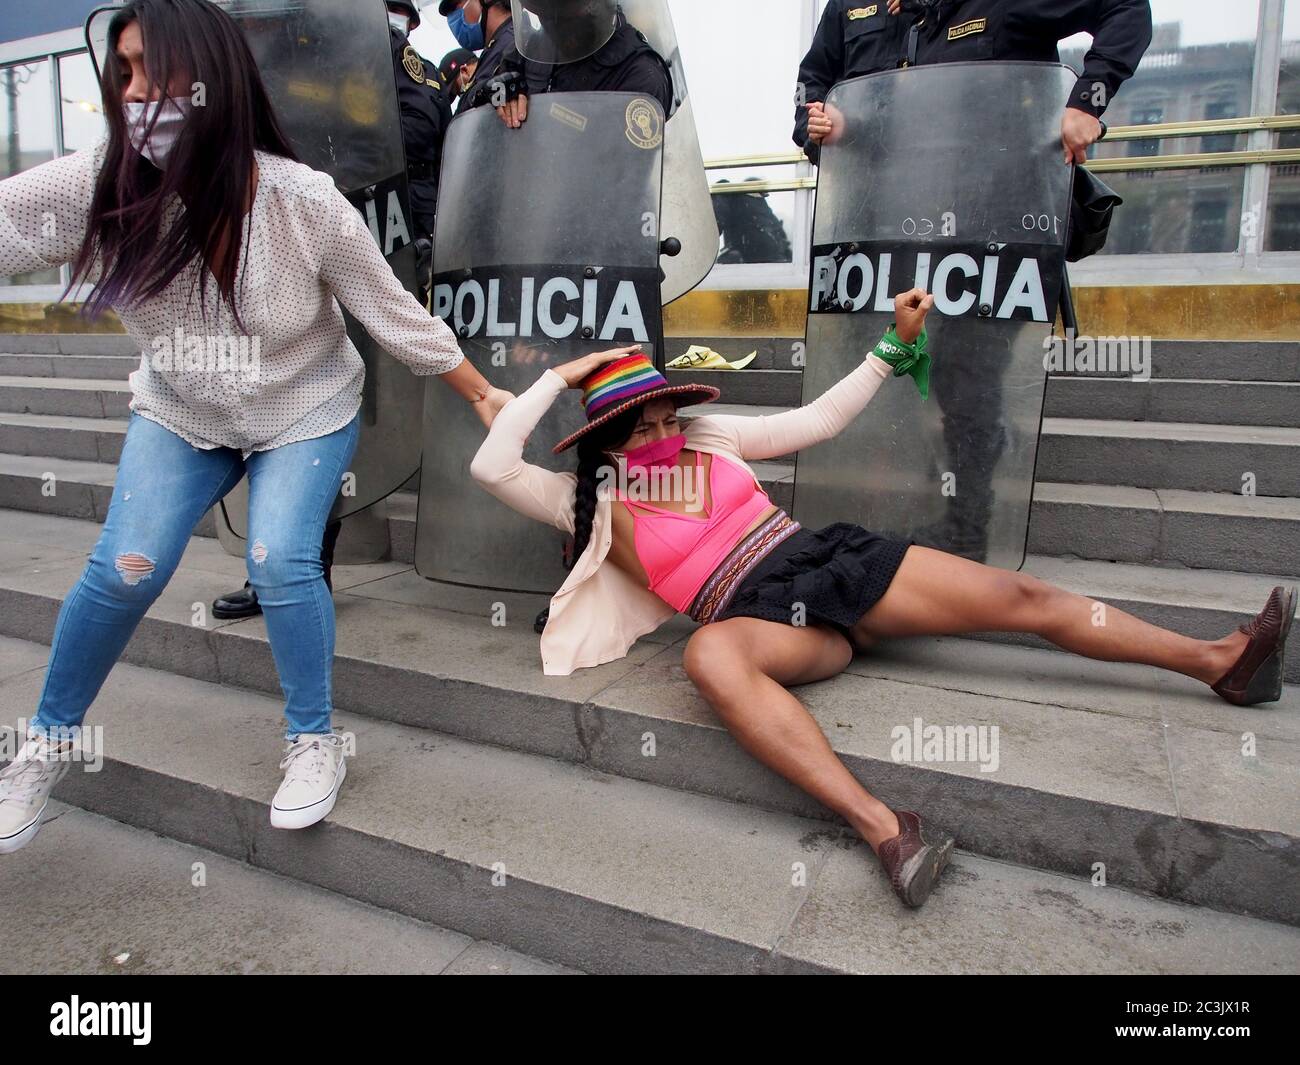 Frauen, die von der Polizei geschlagen wurden, als feministische Demonstranten, die Masken benutzen, wegen Covid-19, ein Sit-in vor der Staatsanwaltschaft´s Lima organisieren, um gegen Geschlechtergewalt und Feminizide zu protestieren Stockfoto